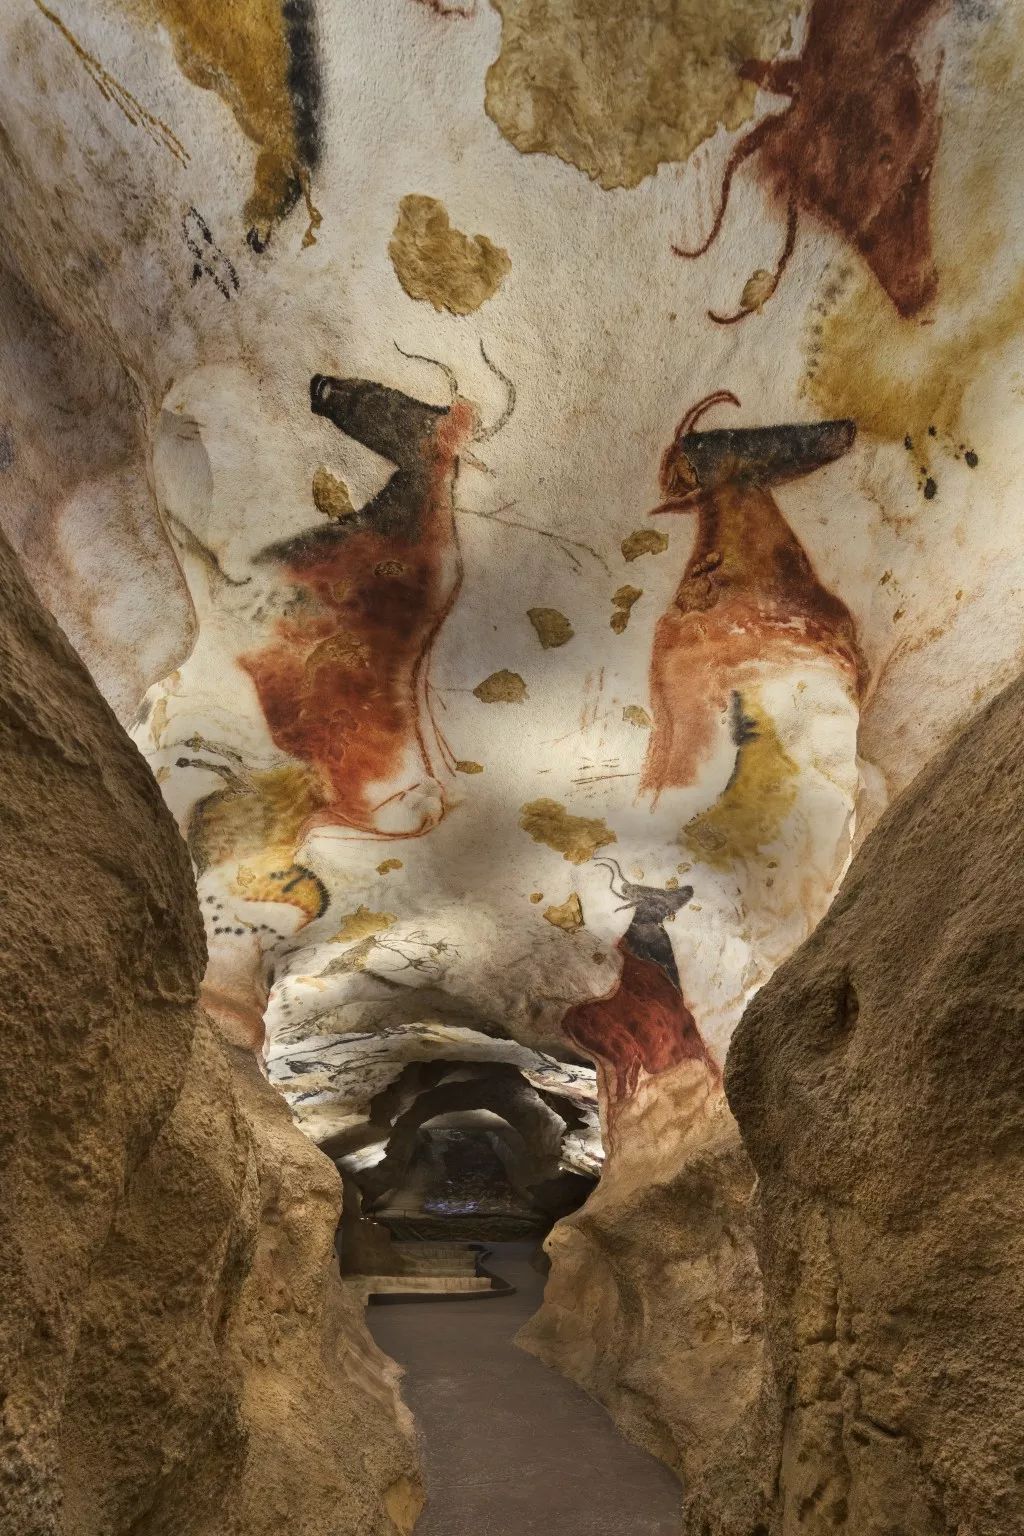 法国洞穴壁画艺术中心设计现代展馆展厅-发现